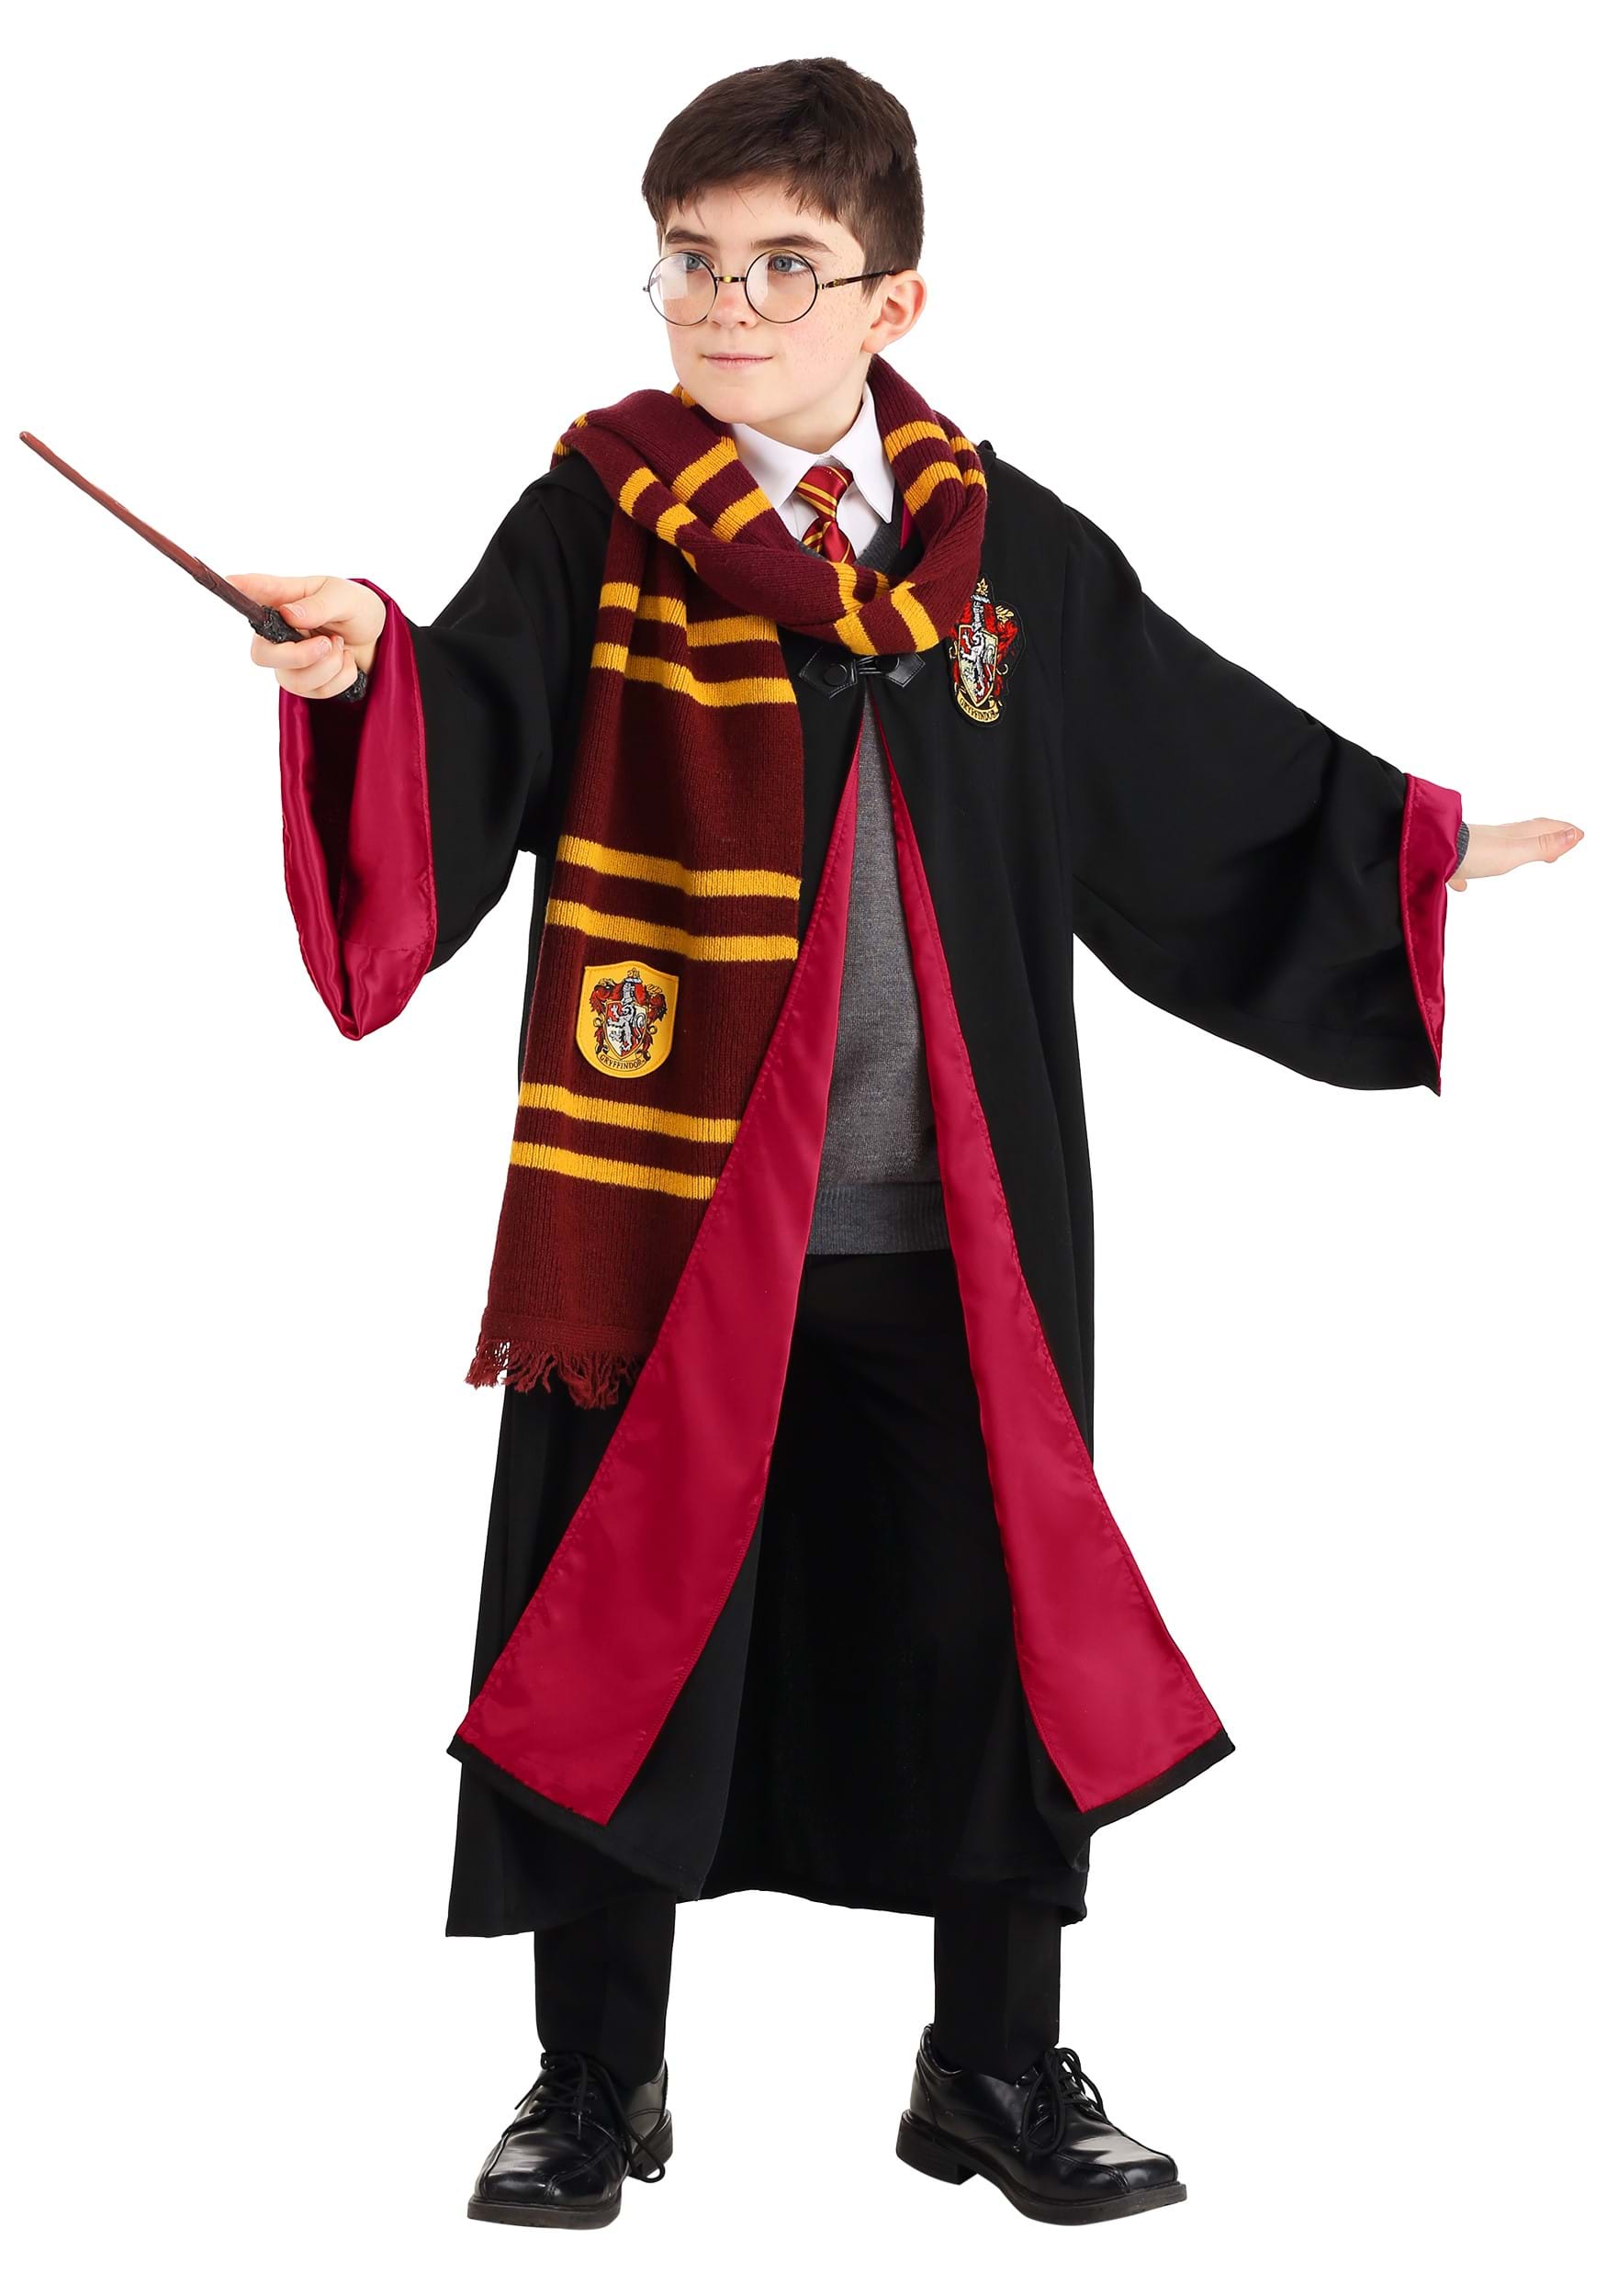 Costume e accessori Harry Potter™ deluxe per bambino: Costumi